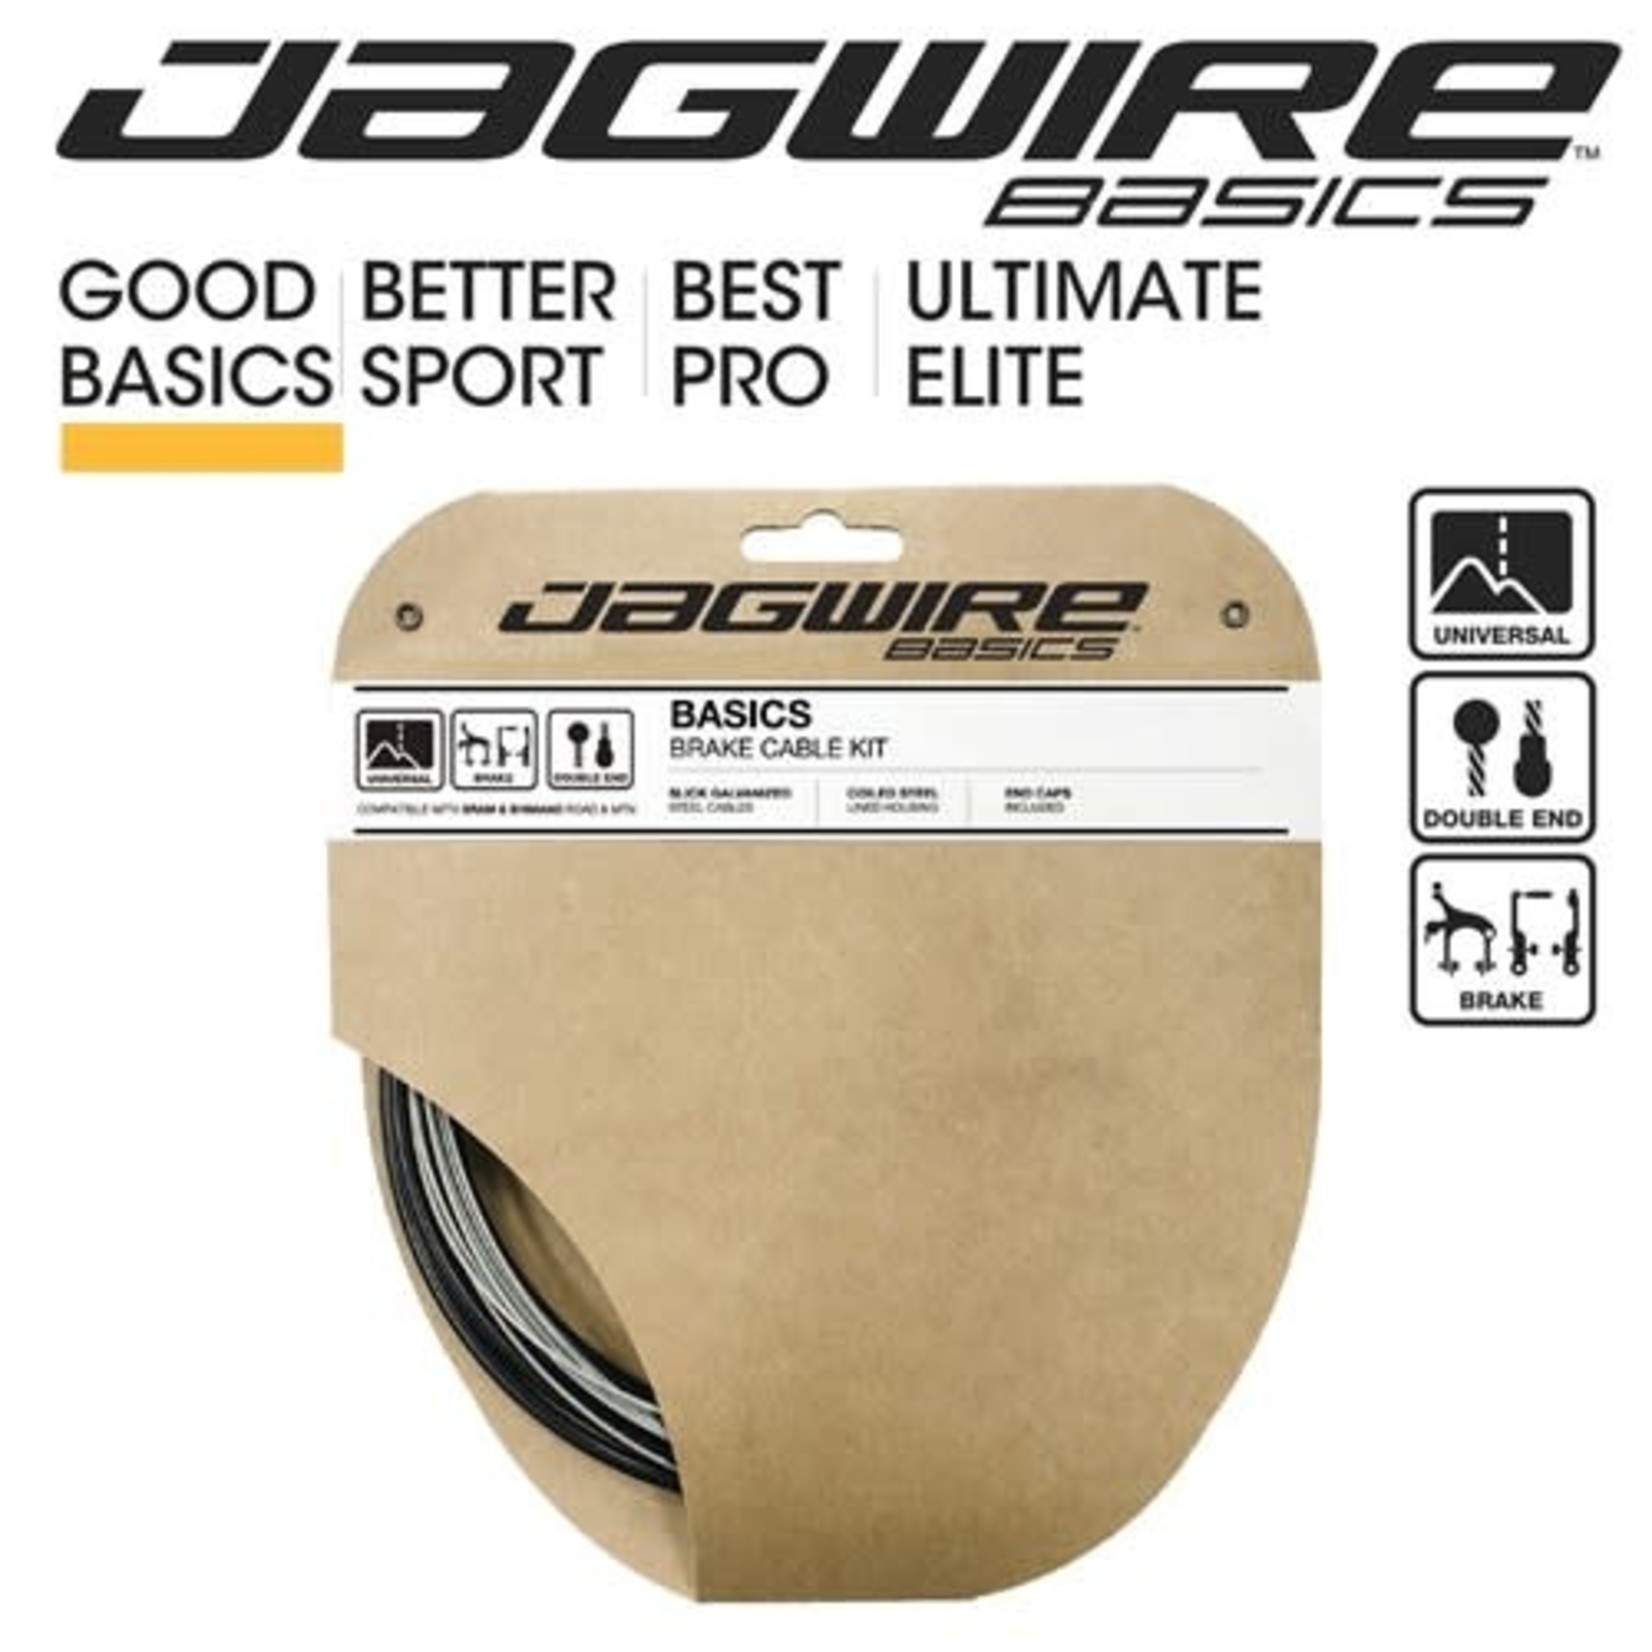 Jagwire Jagwire Basic Gear Cable Kit DIY Kit SRAM/Shimano/Road - Black